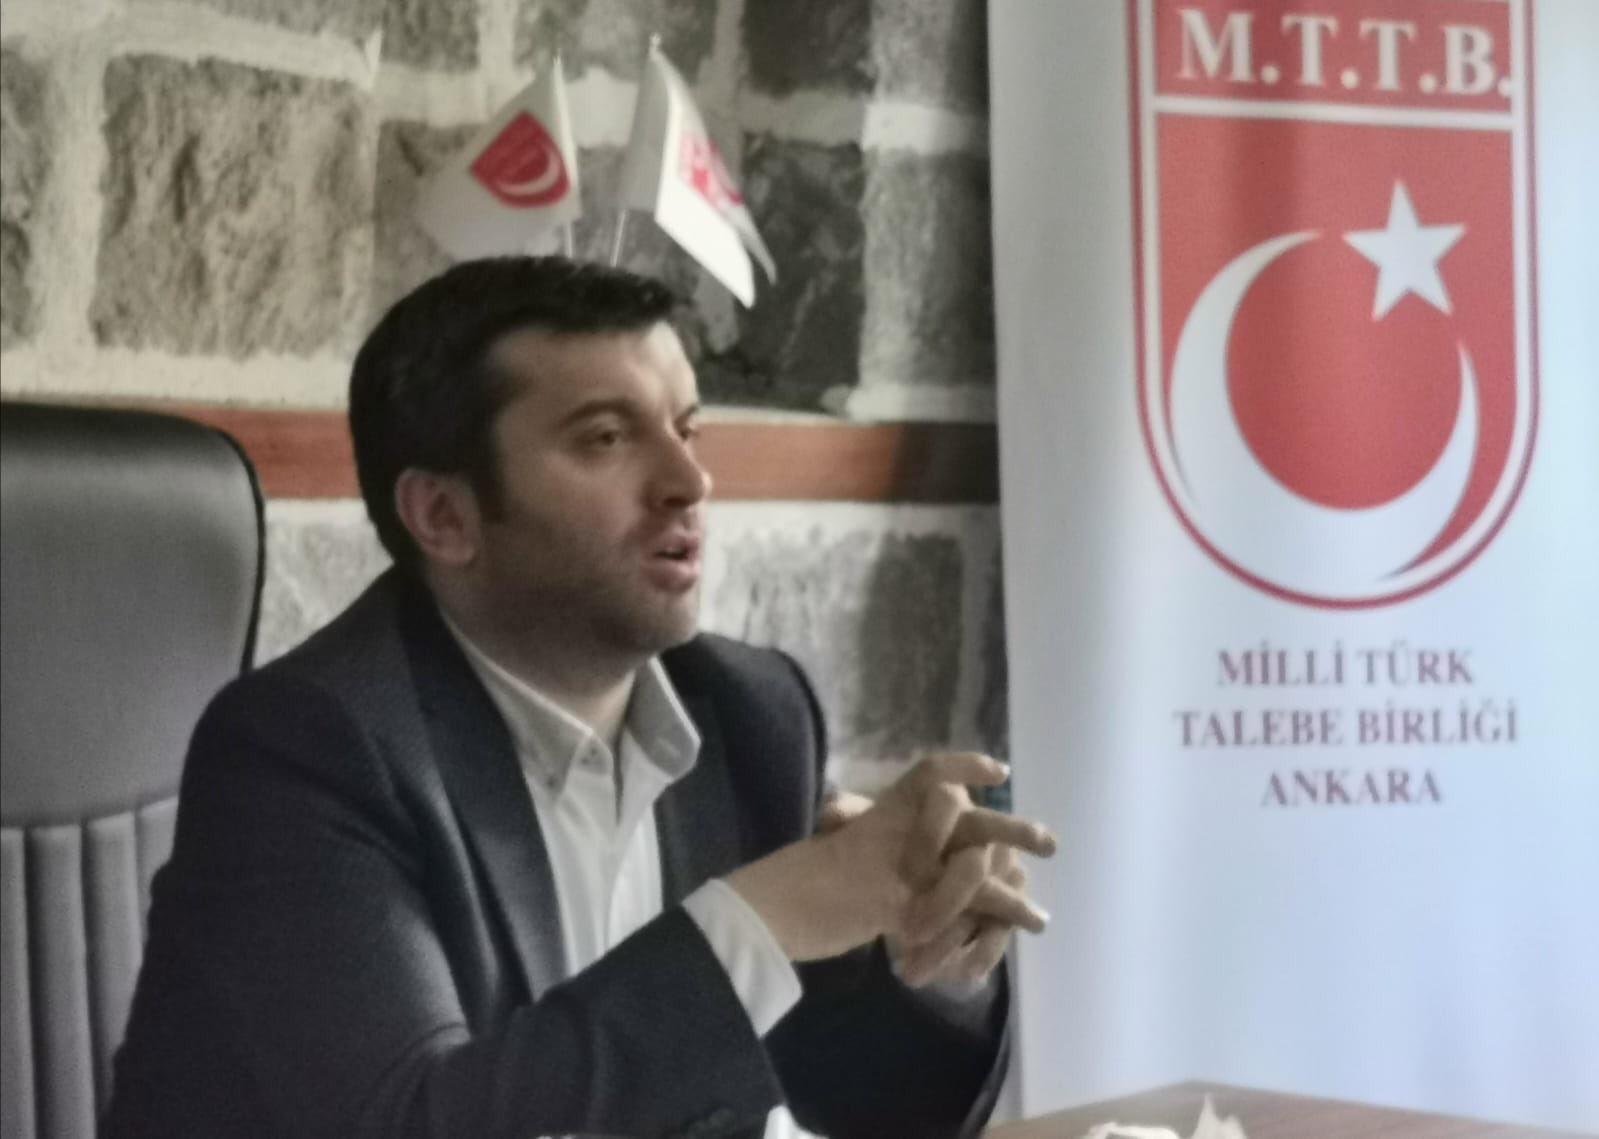 MTTB Ankara İl Teşkilatı